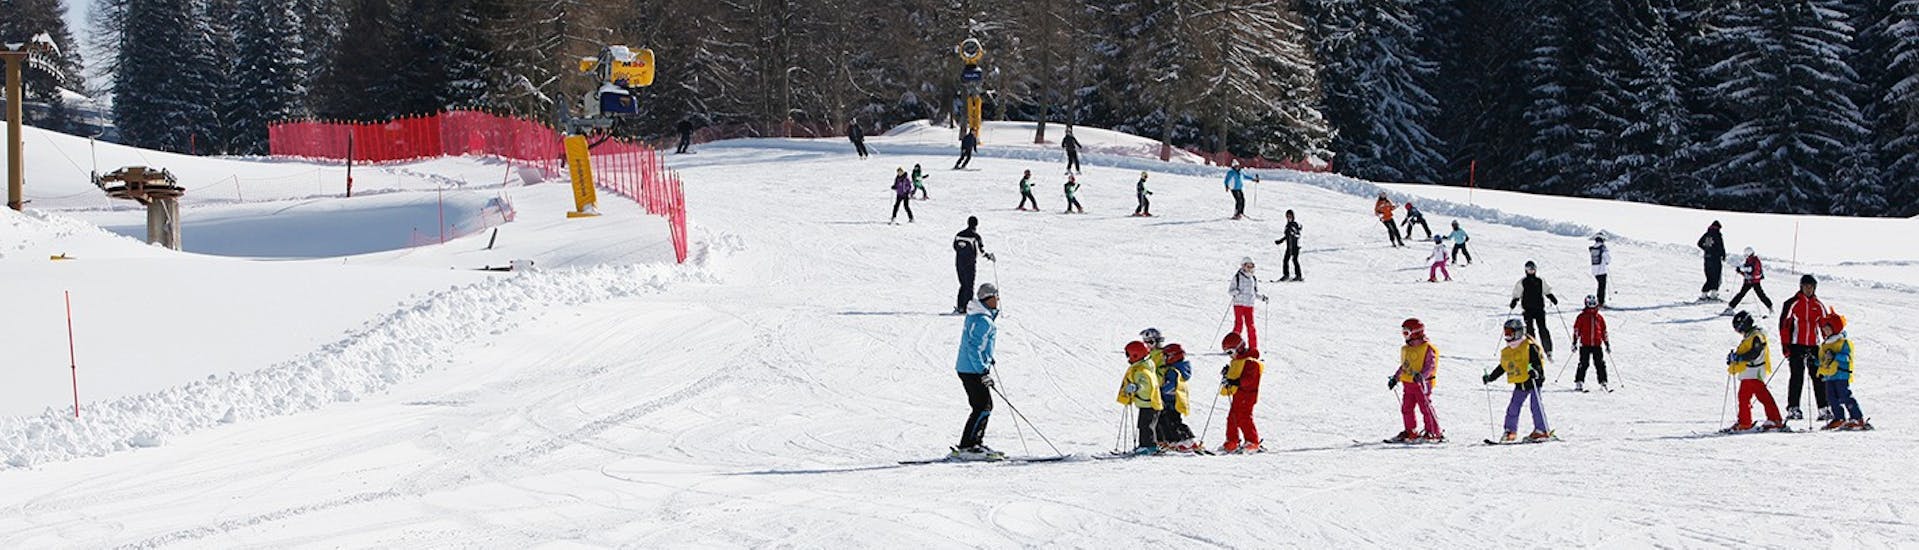 Pistes waar de Kids Ski Lessen (6-14 j.) voor Ervaren Skiërs - Hele Dag met Scuola Italiana Sci Folgaria-Serrada plaatsvinden.